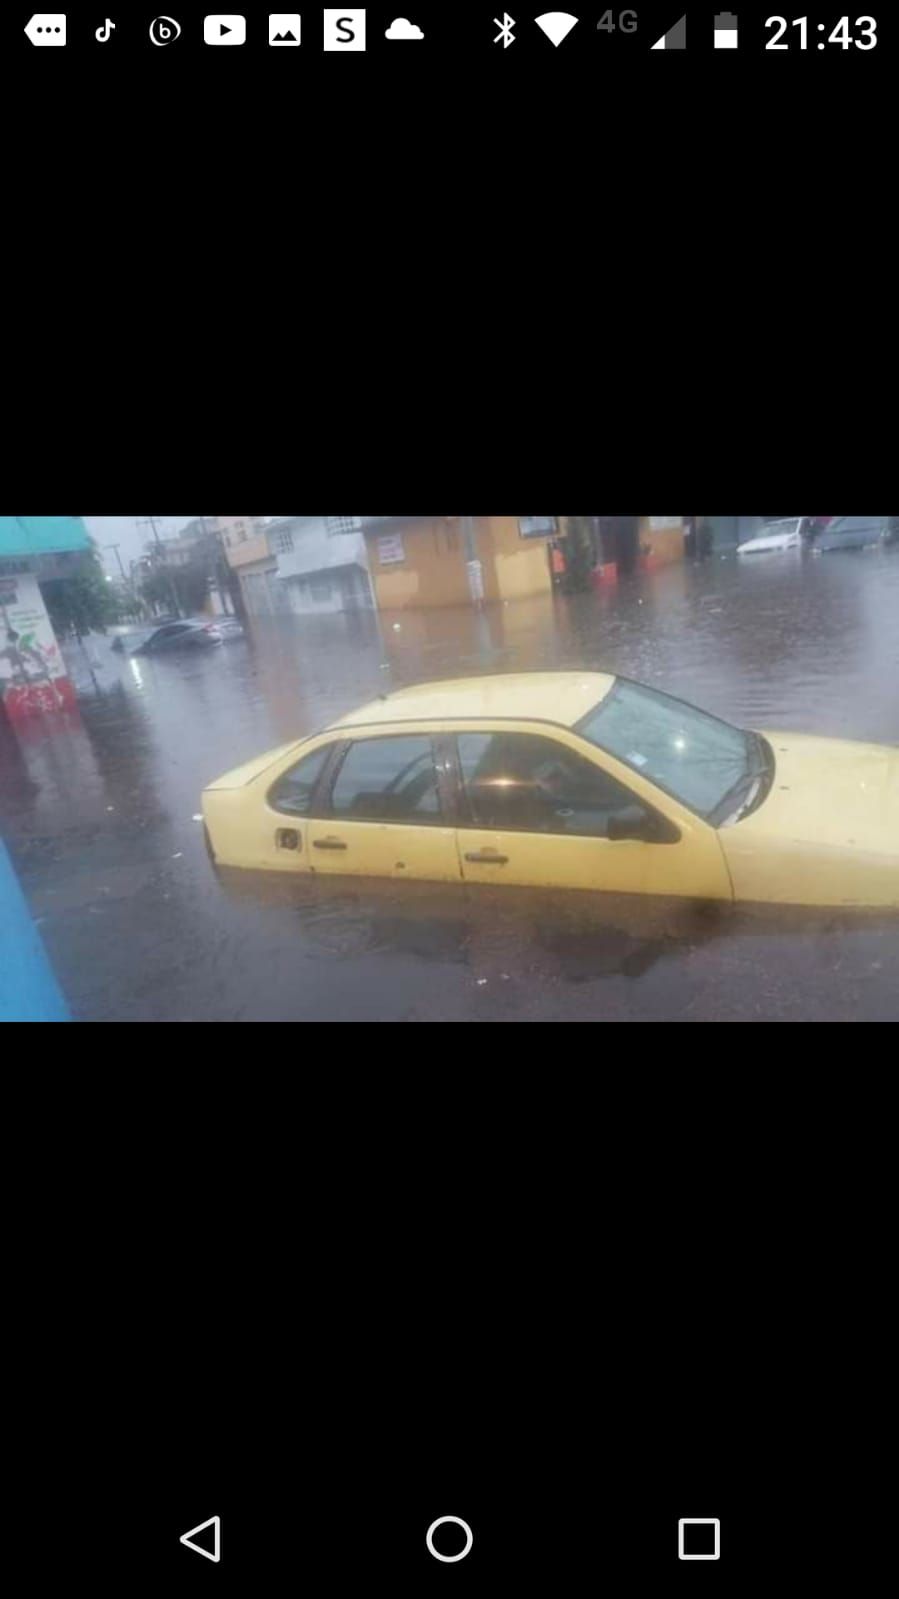 La Paz el tremendo aguacero que cayó hace unas horas sobre la carretera México-Texcoco, ocasiono enorme tráfico vehicular y automóviles inundados casi por el agua